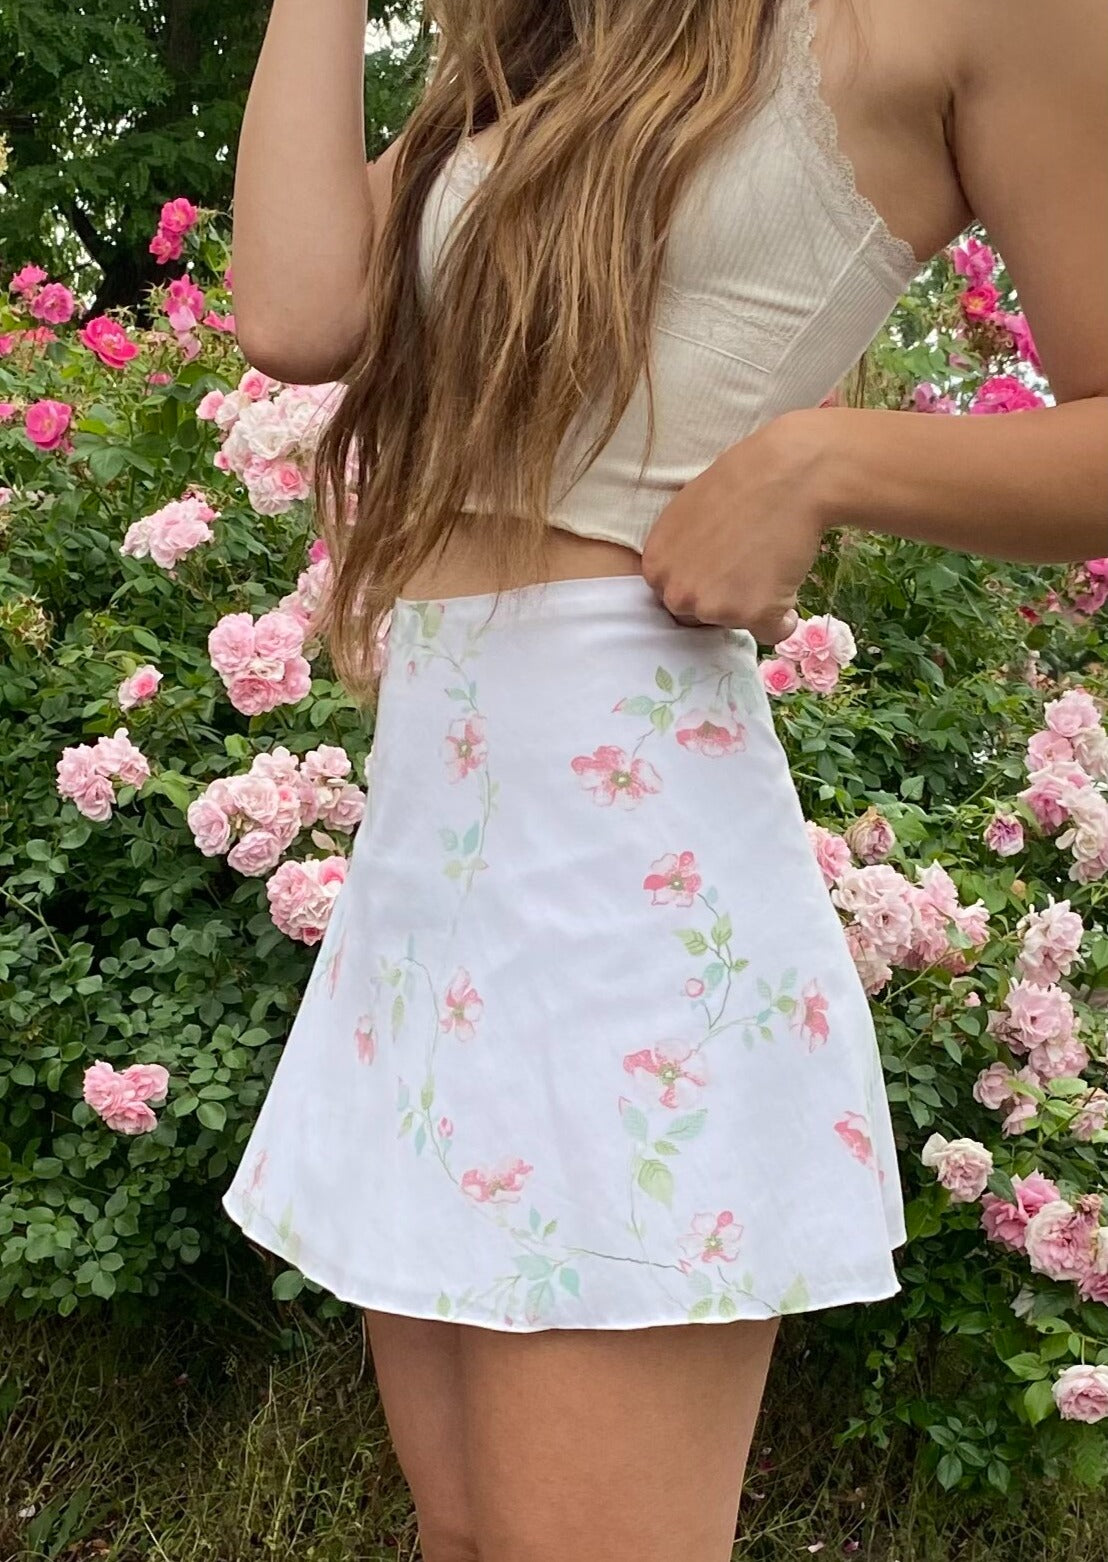 Rose skirt - Floral